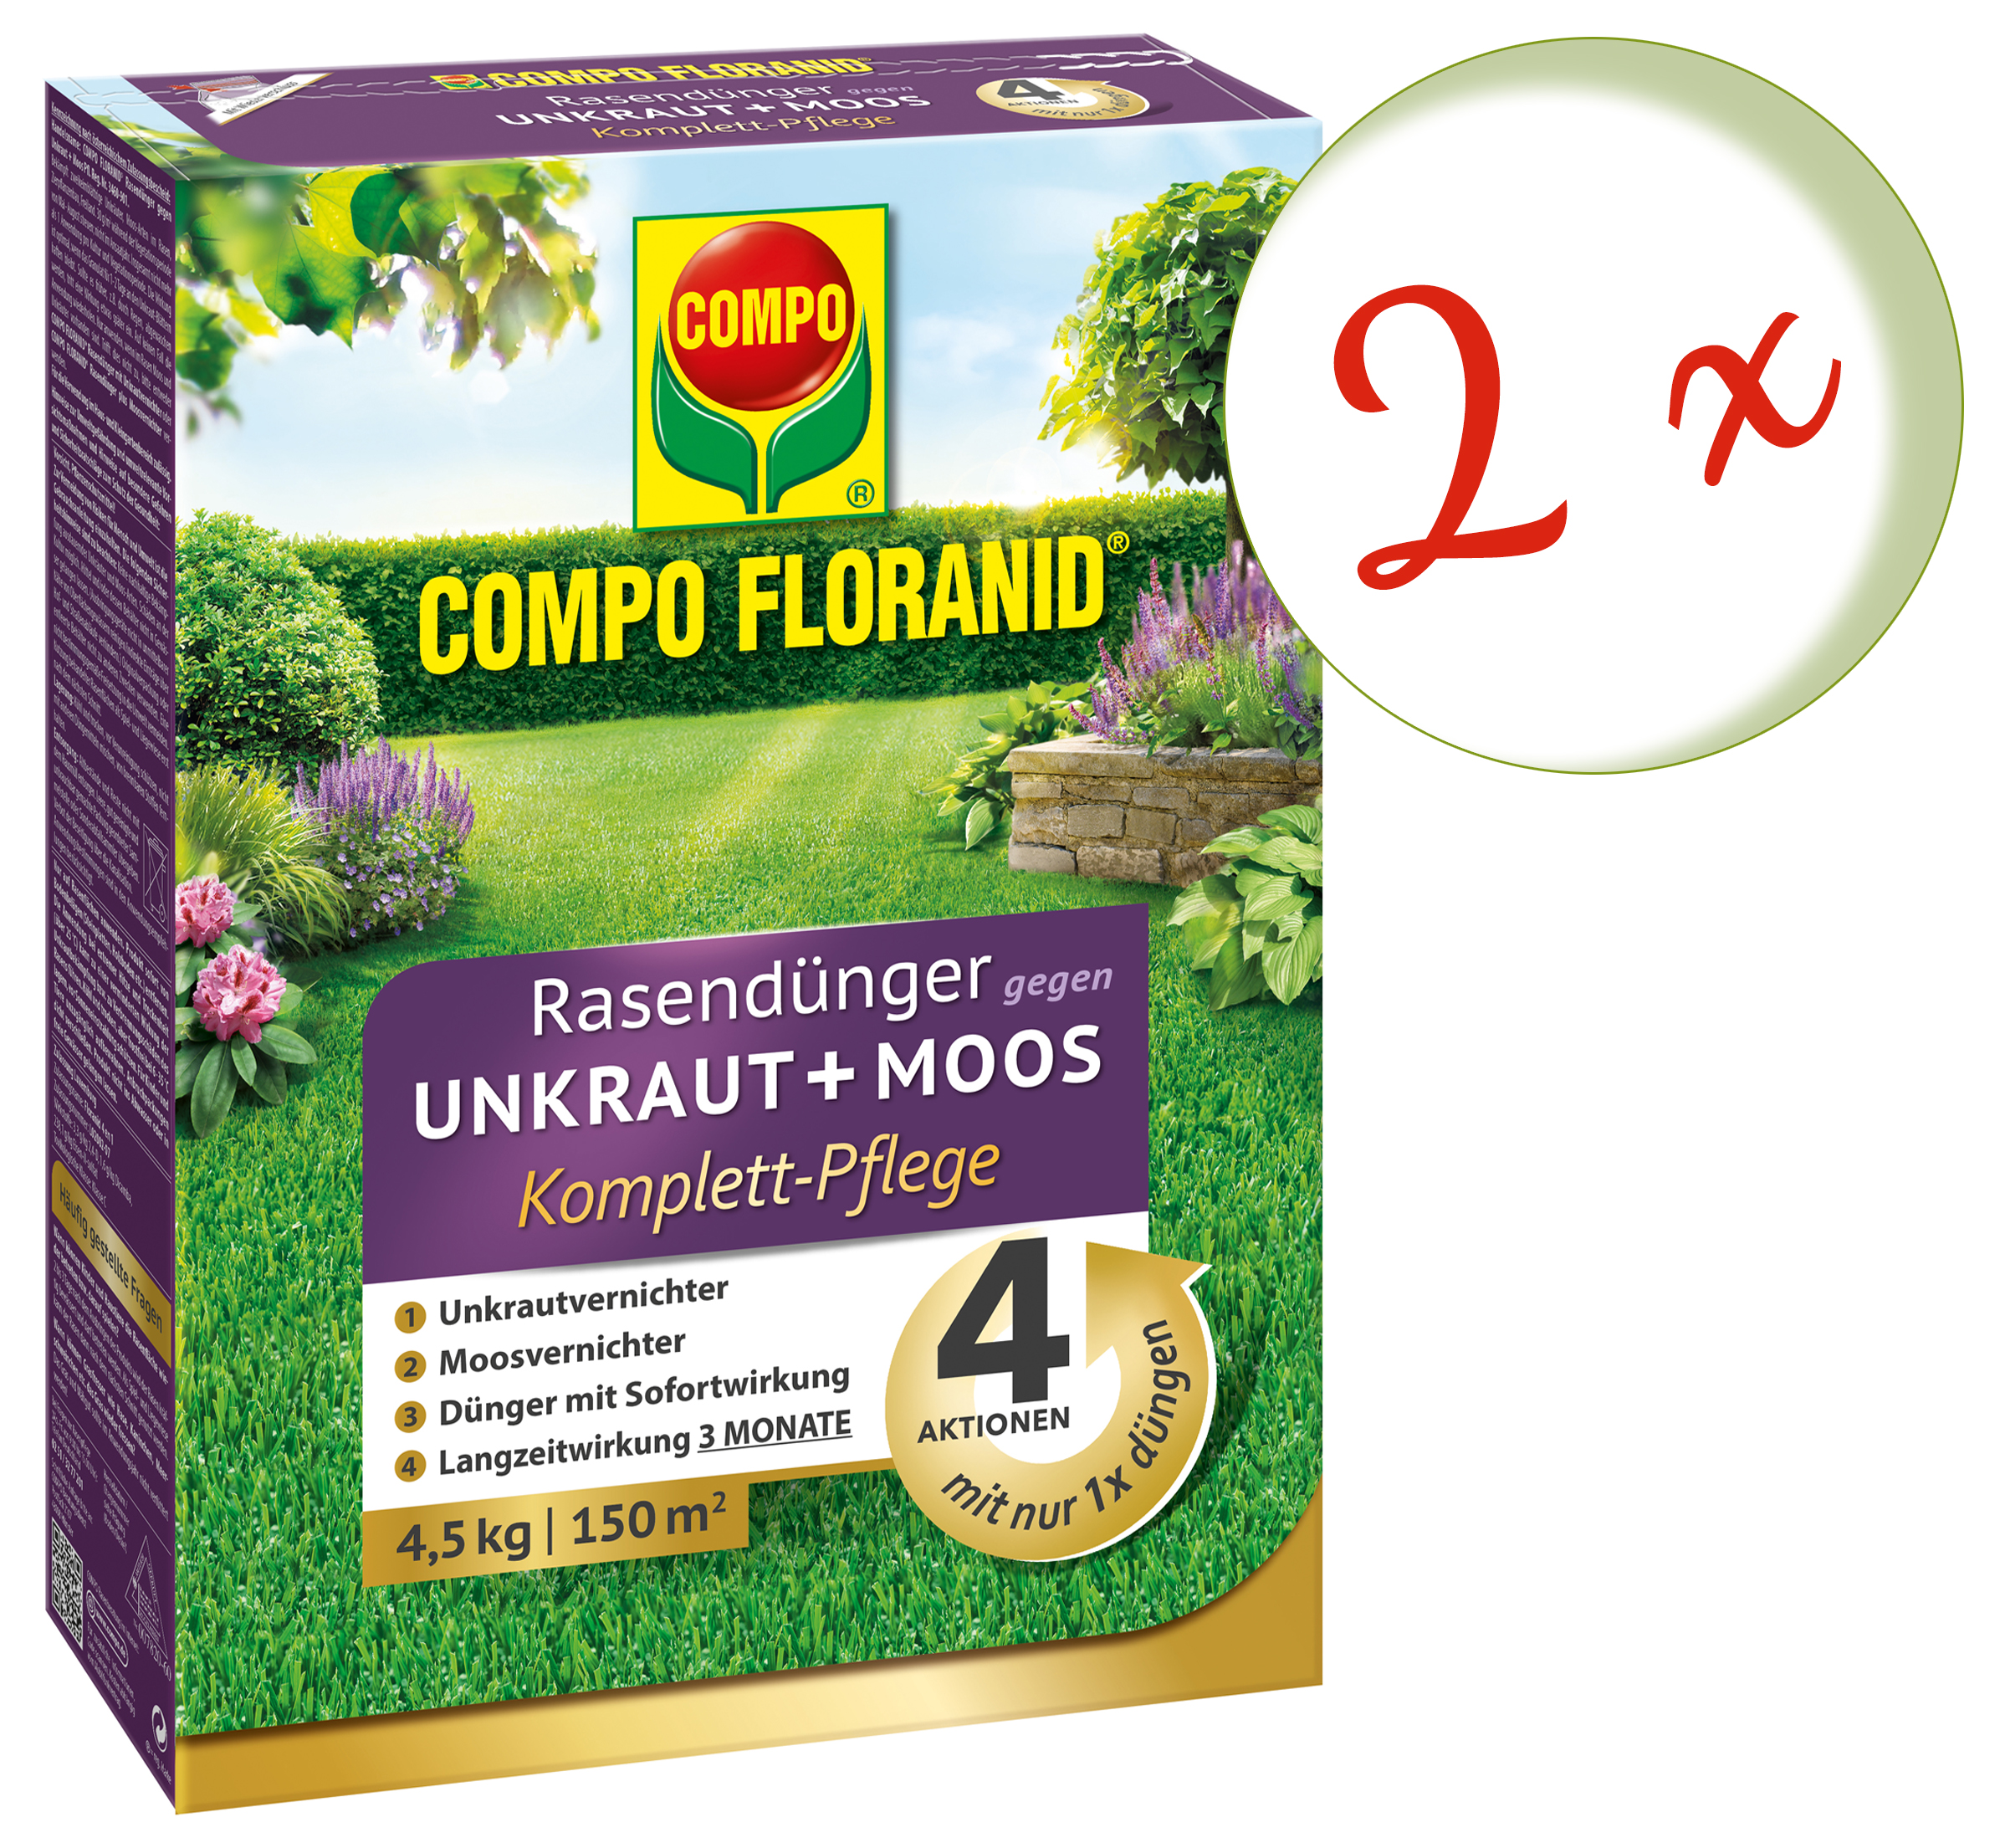 Oleanderhof Sparset 2 X Compo Floranid Rasendunger Gegen Unkraut Und Moos 4in1 Komplettpflege 4 5 Kg Gratis Oleanderhof Flyer Oleandershop